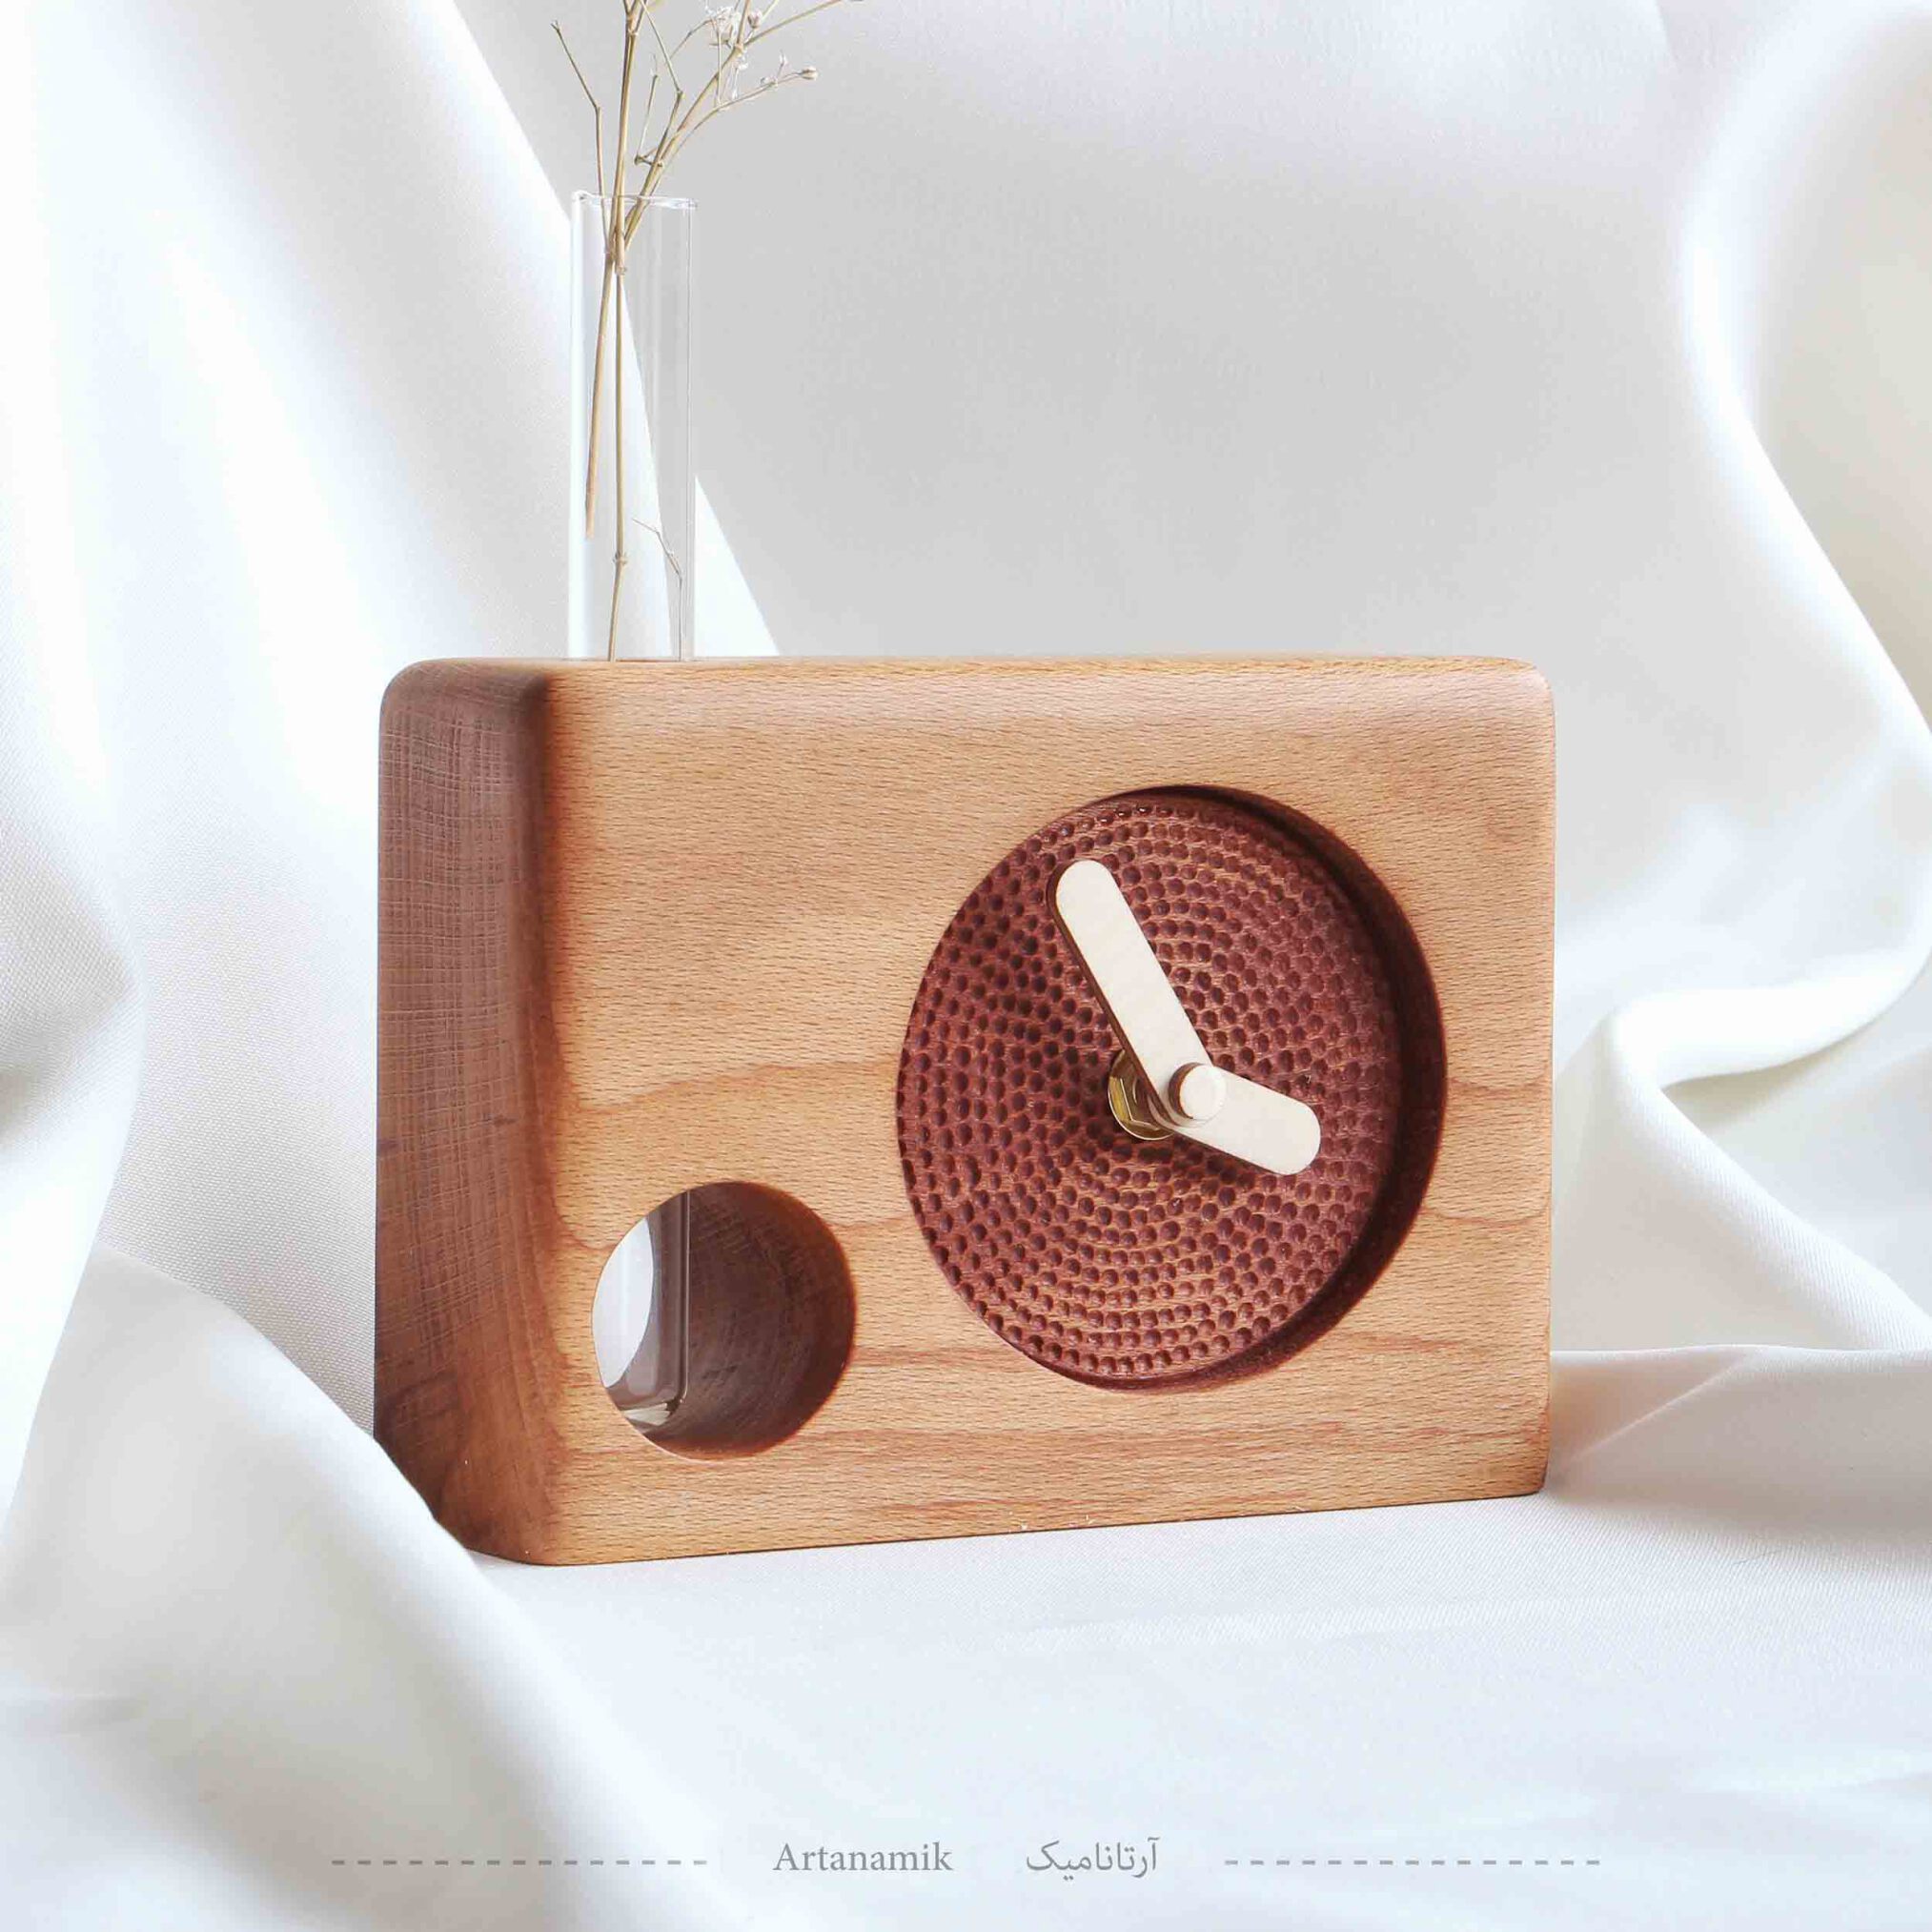  ساعت رومیزی چوبی مدل باوان 